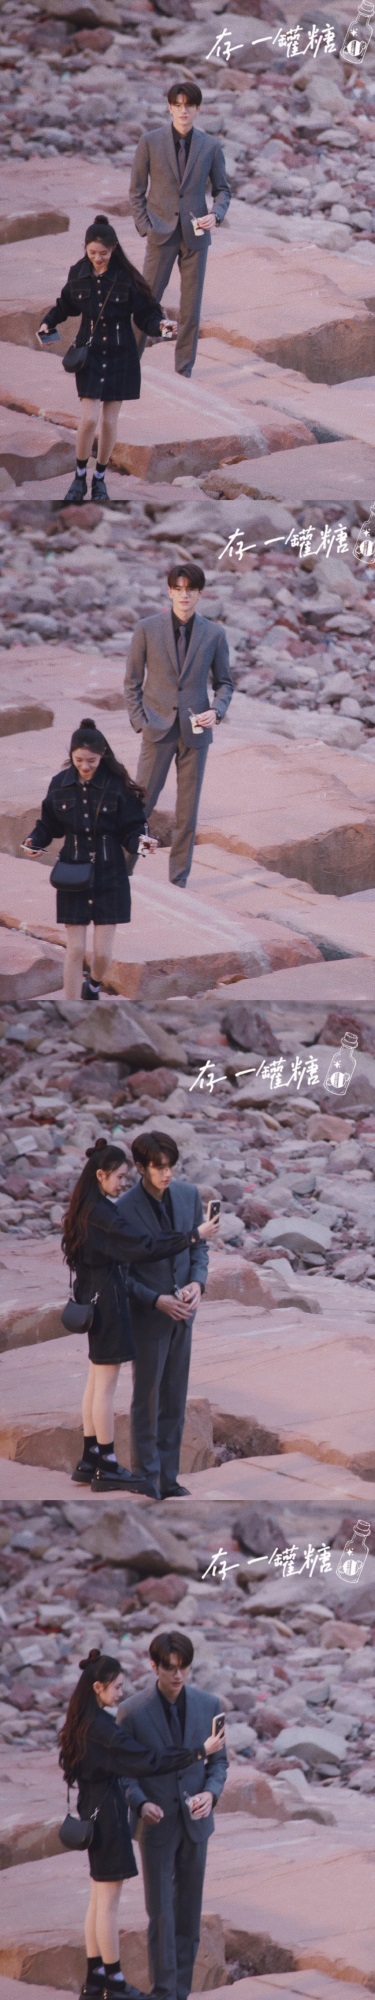 Lưu Hạo Tồn diễn cảnh khóc được khen ngợi hết lời ở phim trường Ly Tâm Lực, netizen xuýt xoa 'khóc rung động lòng người là có thật' - Ảnh 1